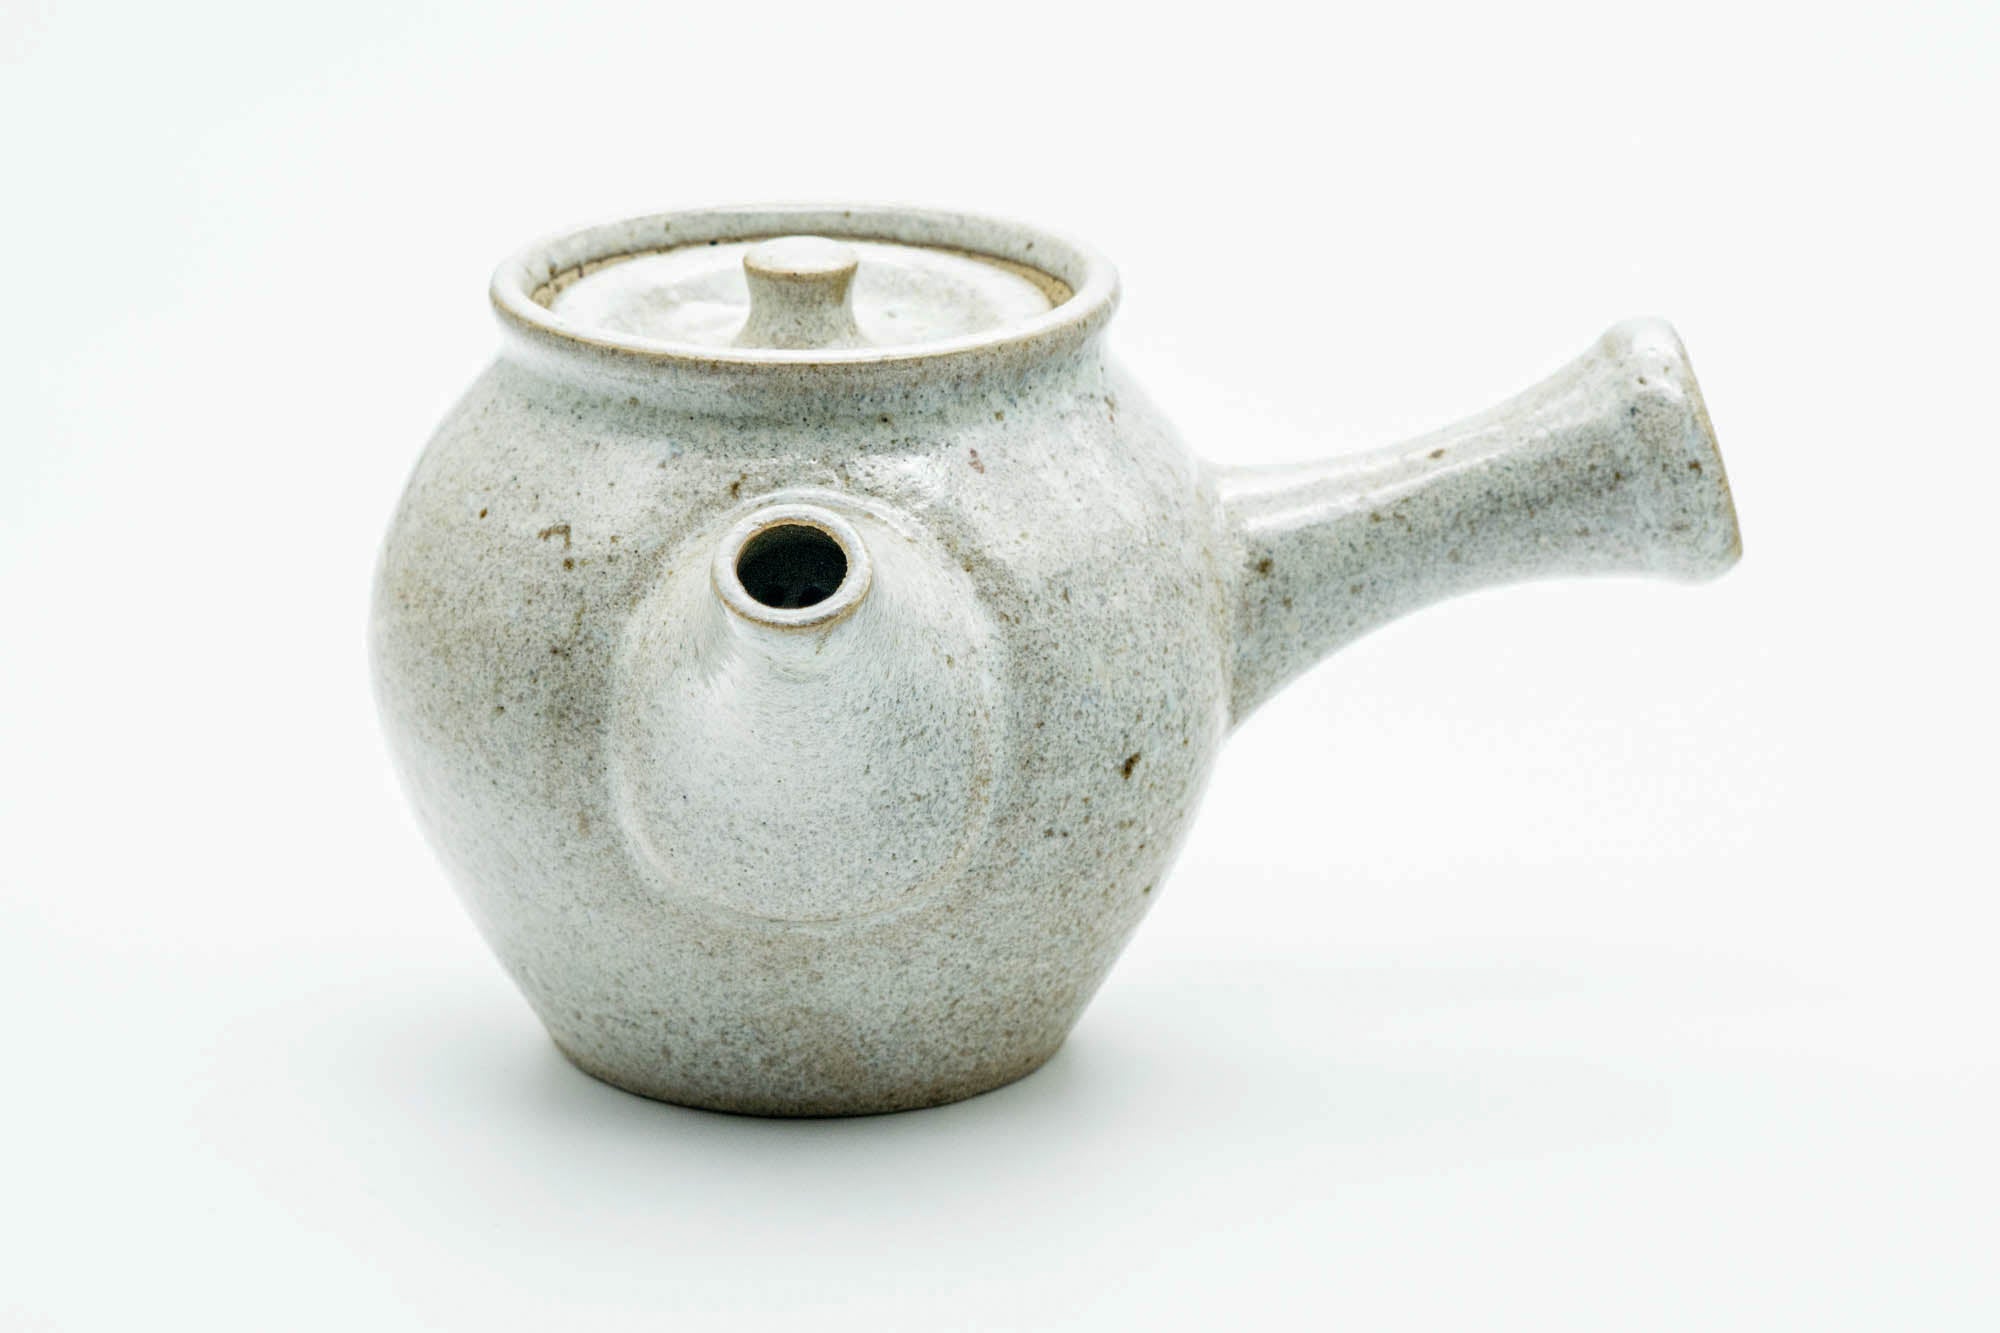 Japanese Kyusu - Large Floral Grey Glazed Do-ake Ceramic Filter Teapot - 500ml